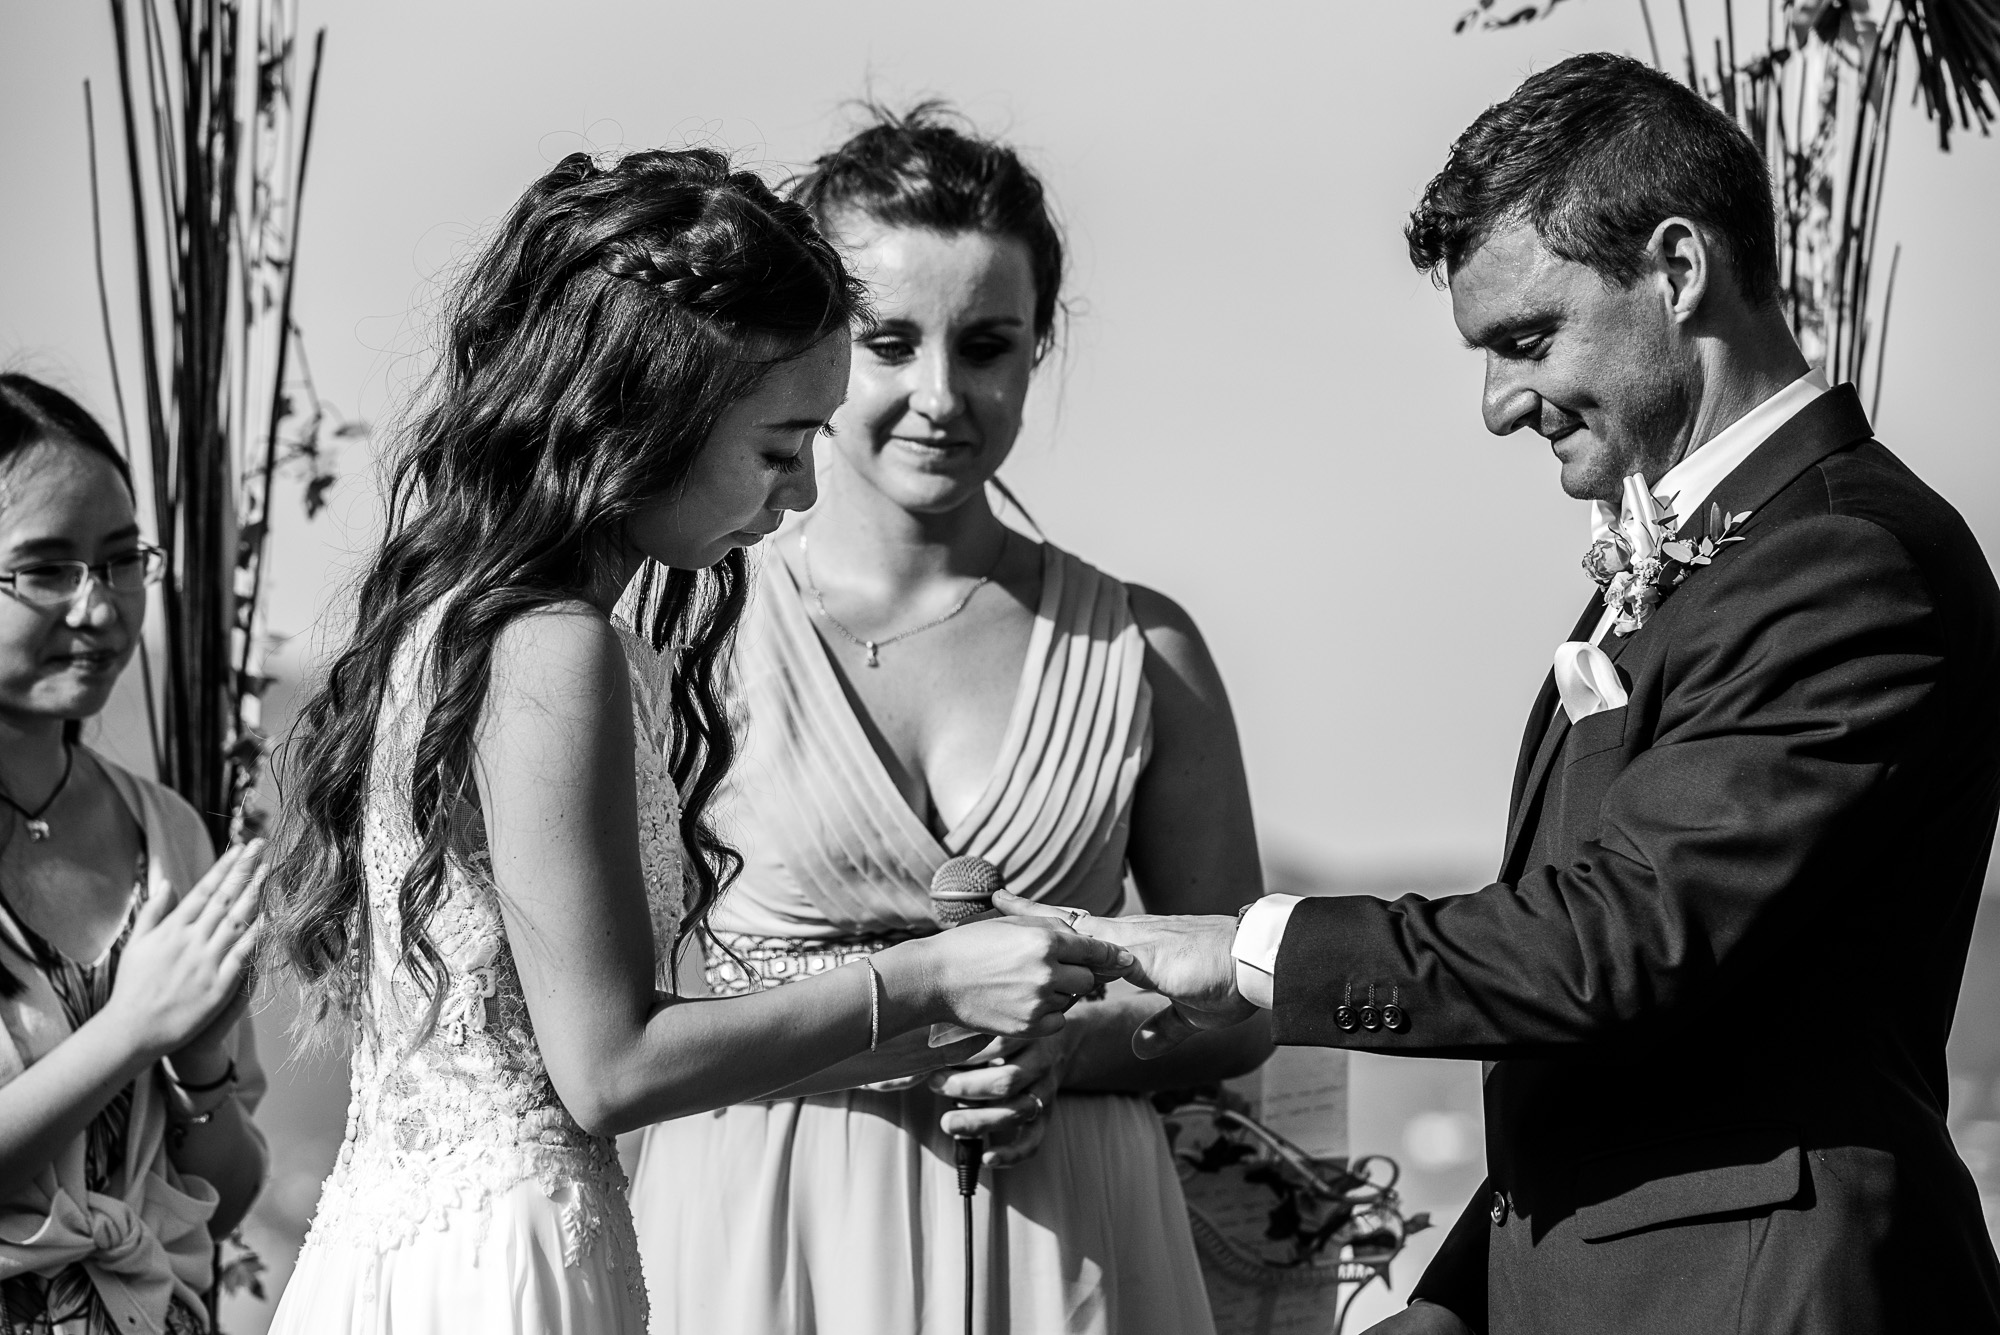 Cérémonie de mariage laïque au bord du lac du Bourget